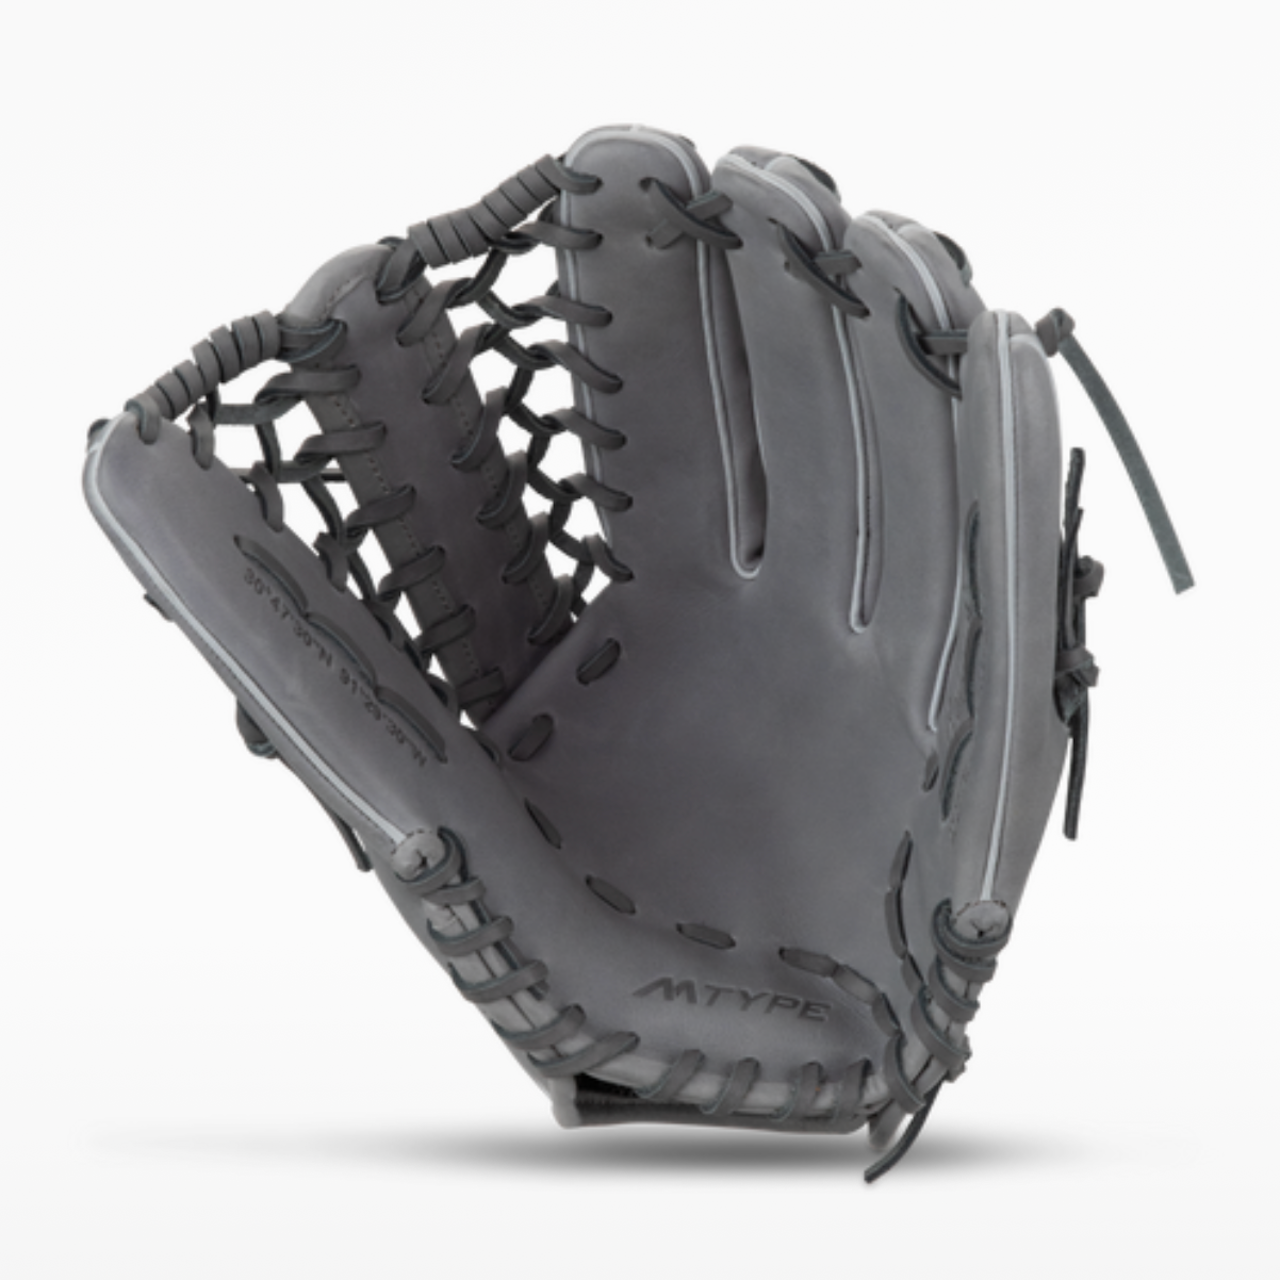 Marucci Cypress 12.75" Baseball Glove - MFG2CY78R1-GY/SL